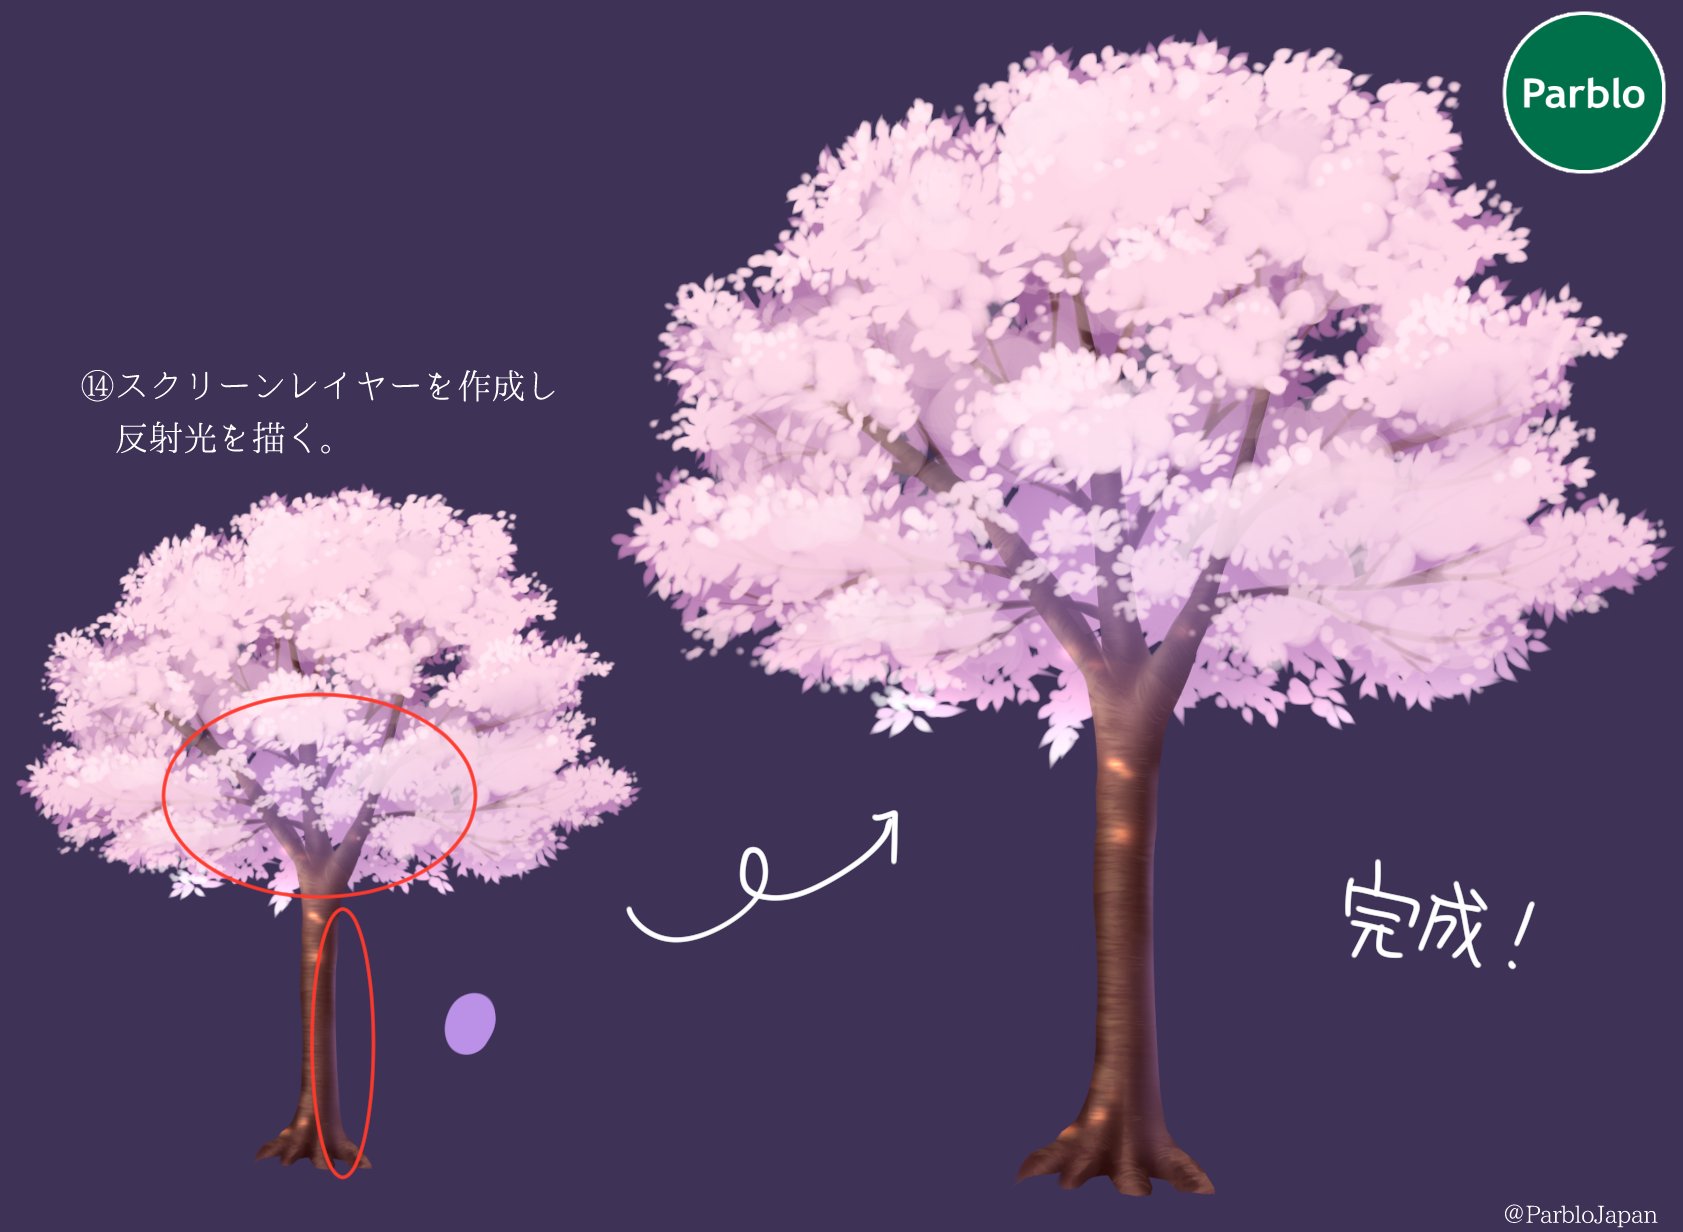 Parblo Japan 暖かくなりましたね イラストでお花見しよう 本日は満開の桜の描き方 桜いっぱいのイラストに挑戦してみよう イラスト好きと繋がりたい 絵描きさんと繋がりたい Parblo 桜 T Co Jyj30utxqk Twitter